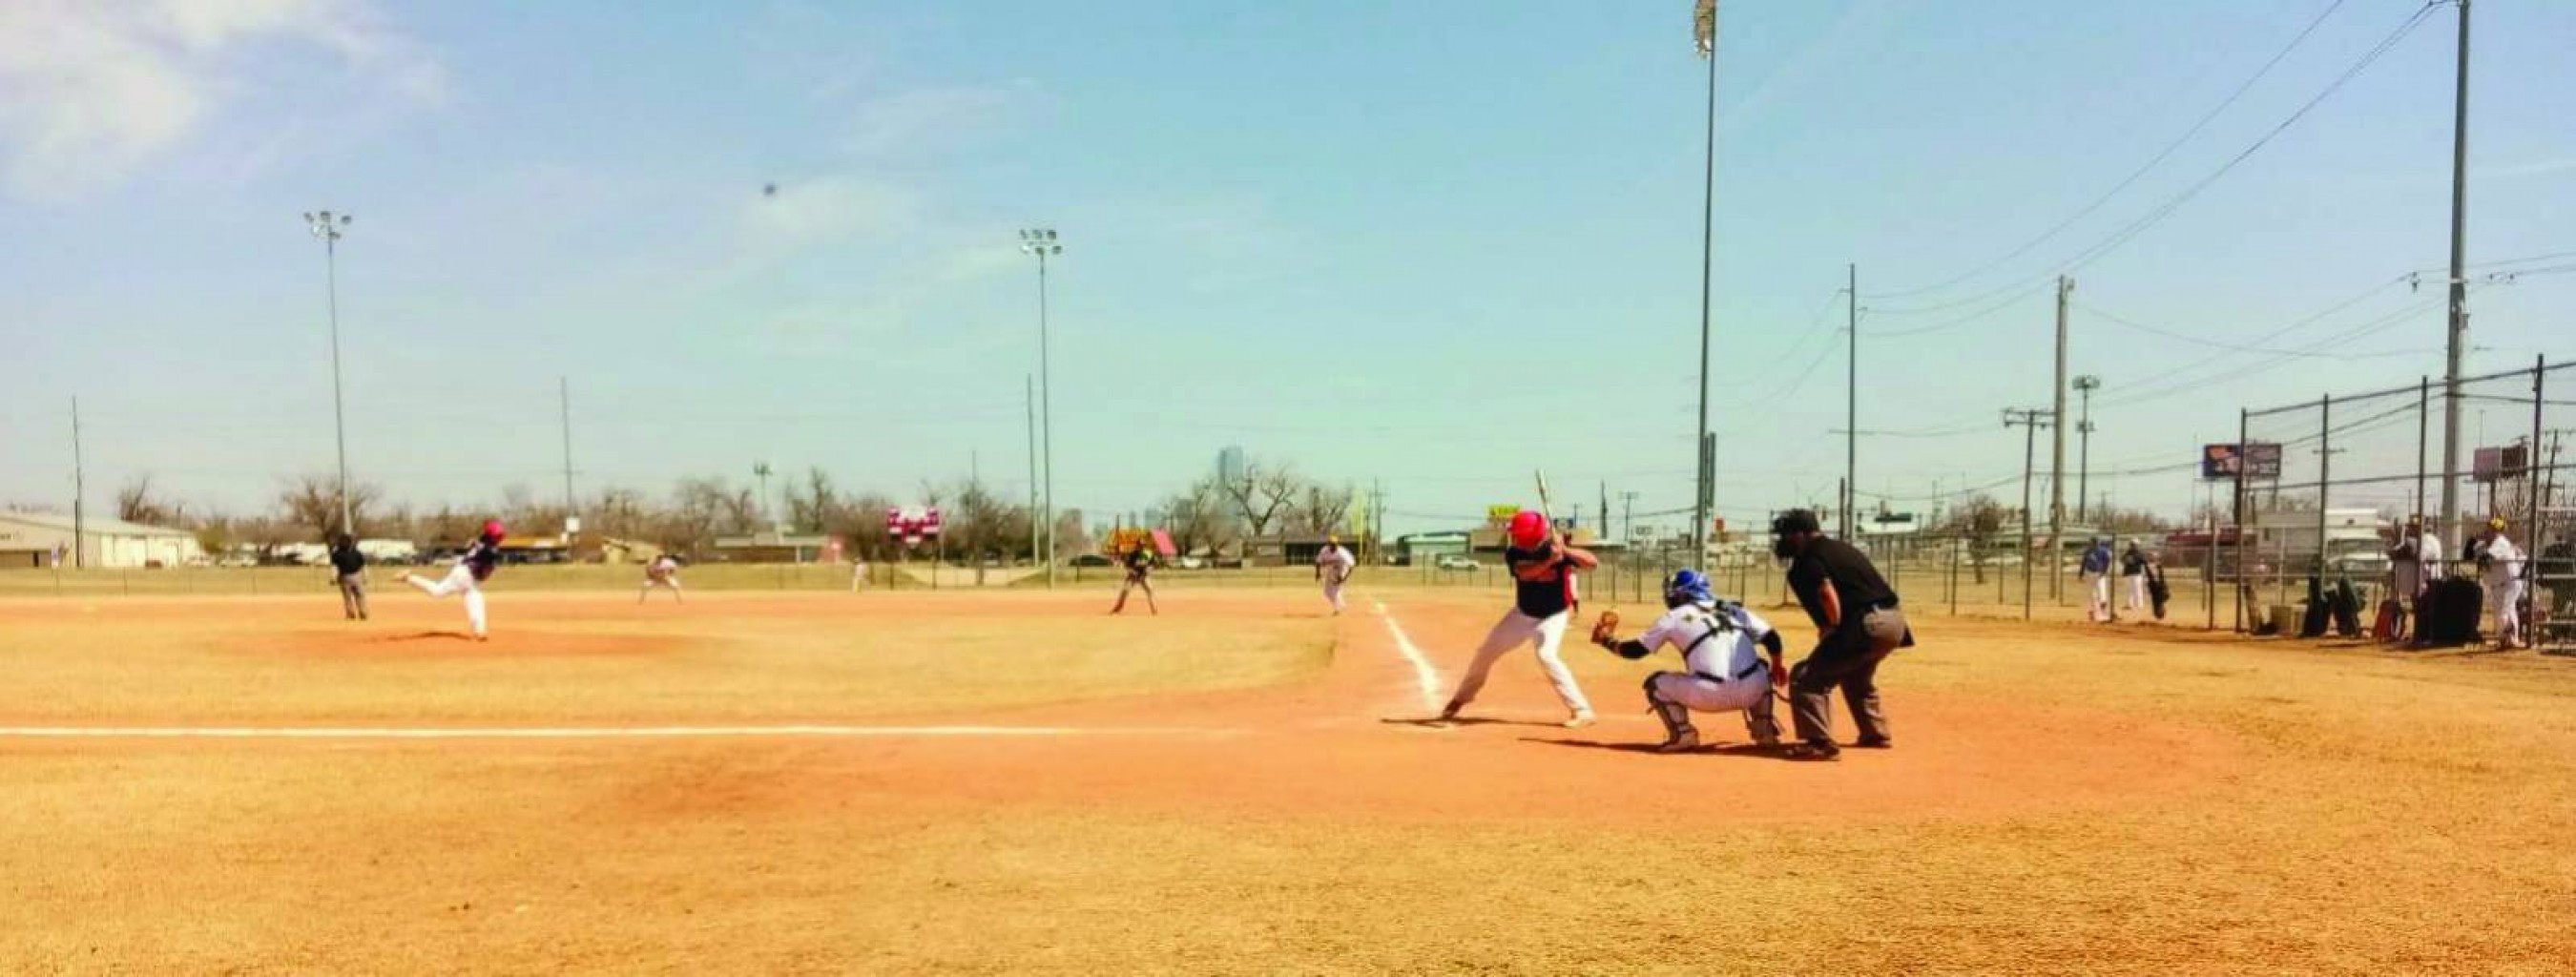 Mexican-American Baseball League da la voz de “¡Playball!”